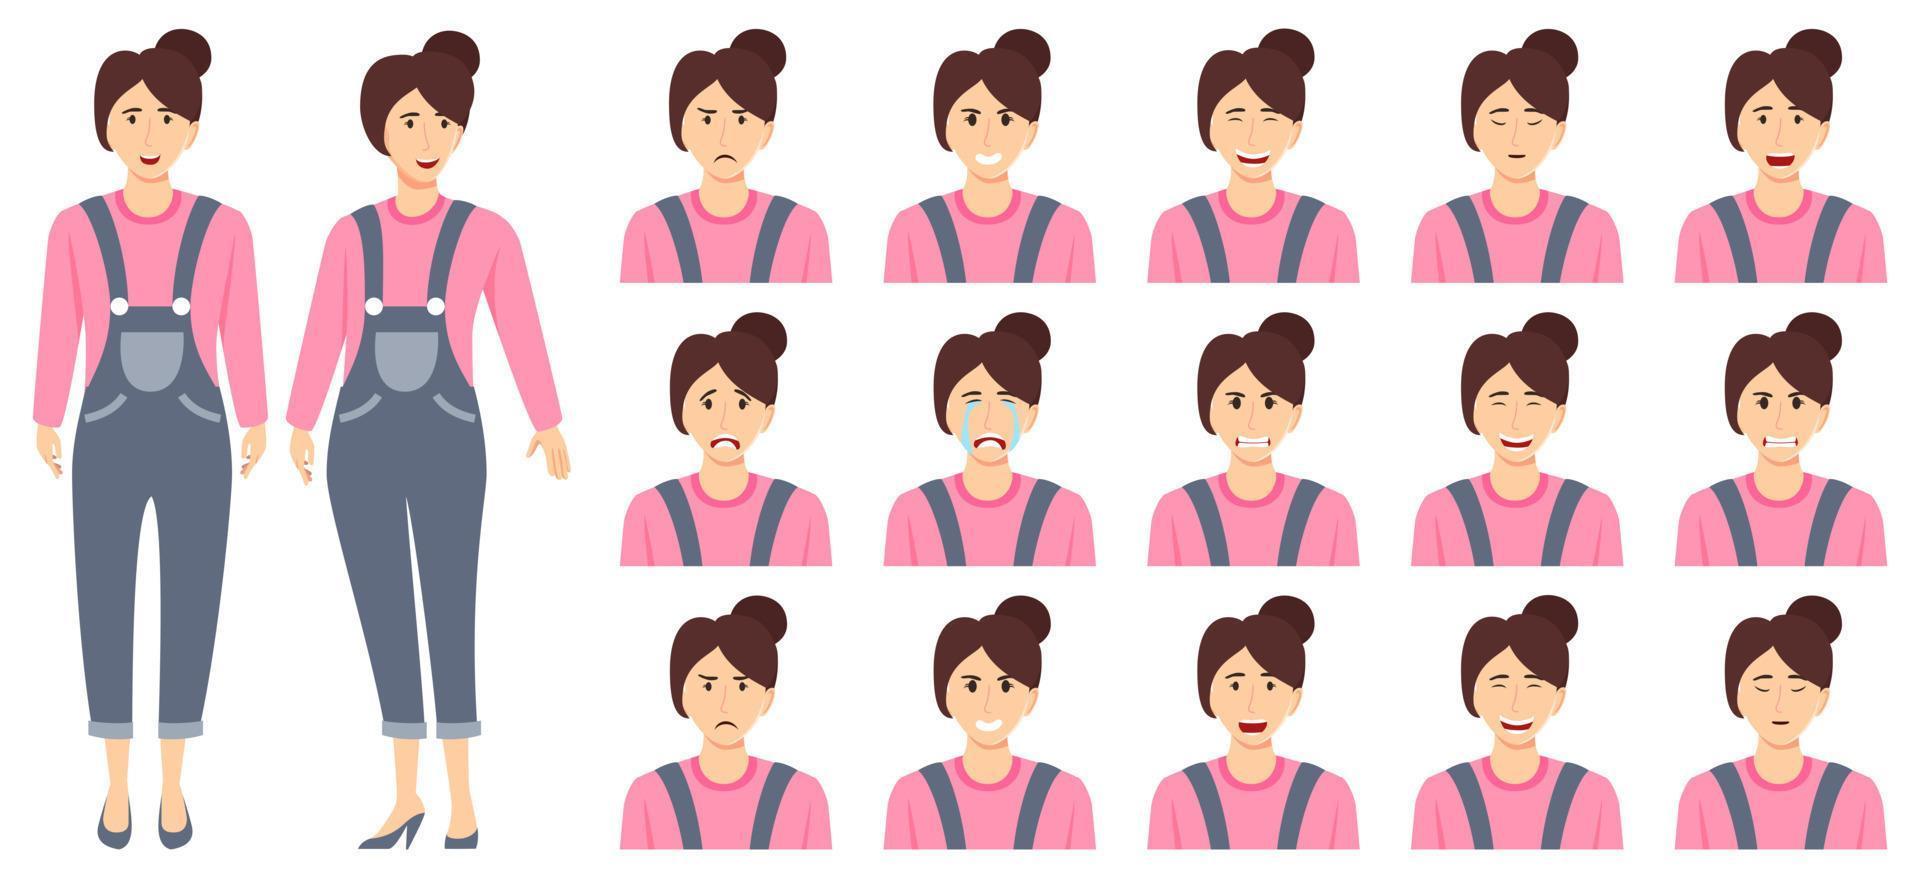 Linda empresaria establece un avatar con diferentes expresiones faciales y emociones enojado llorar feliz posando aislado vector